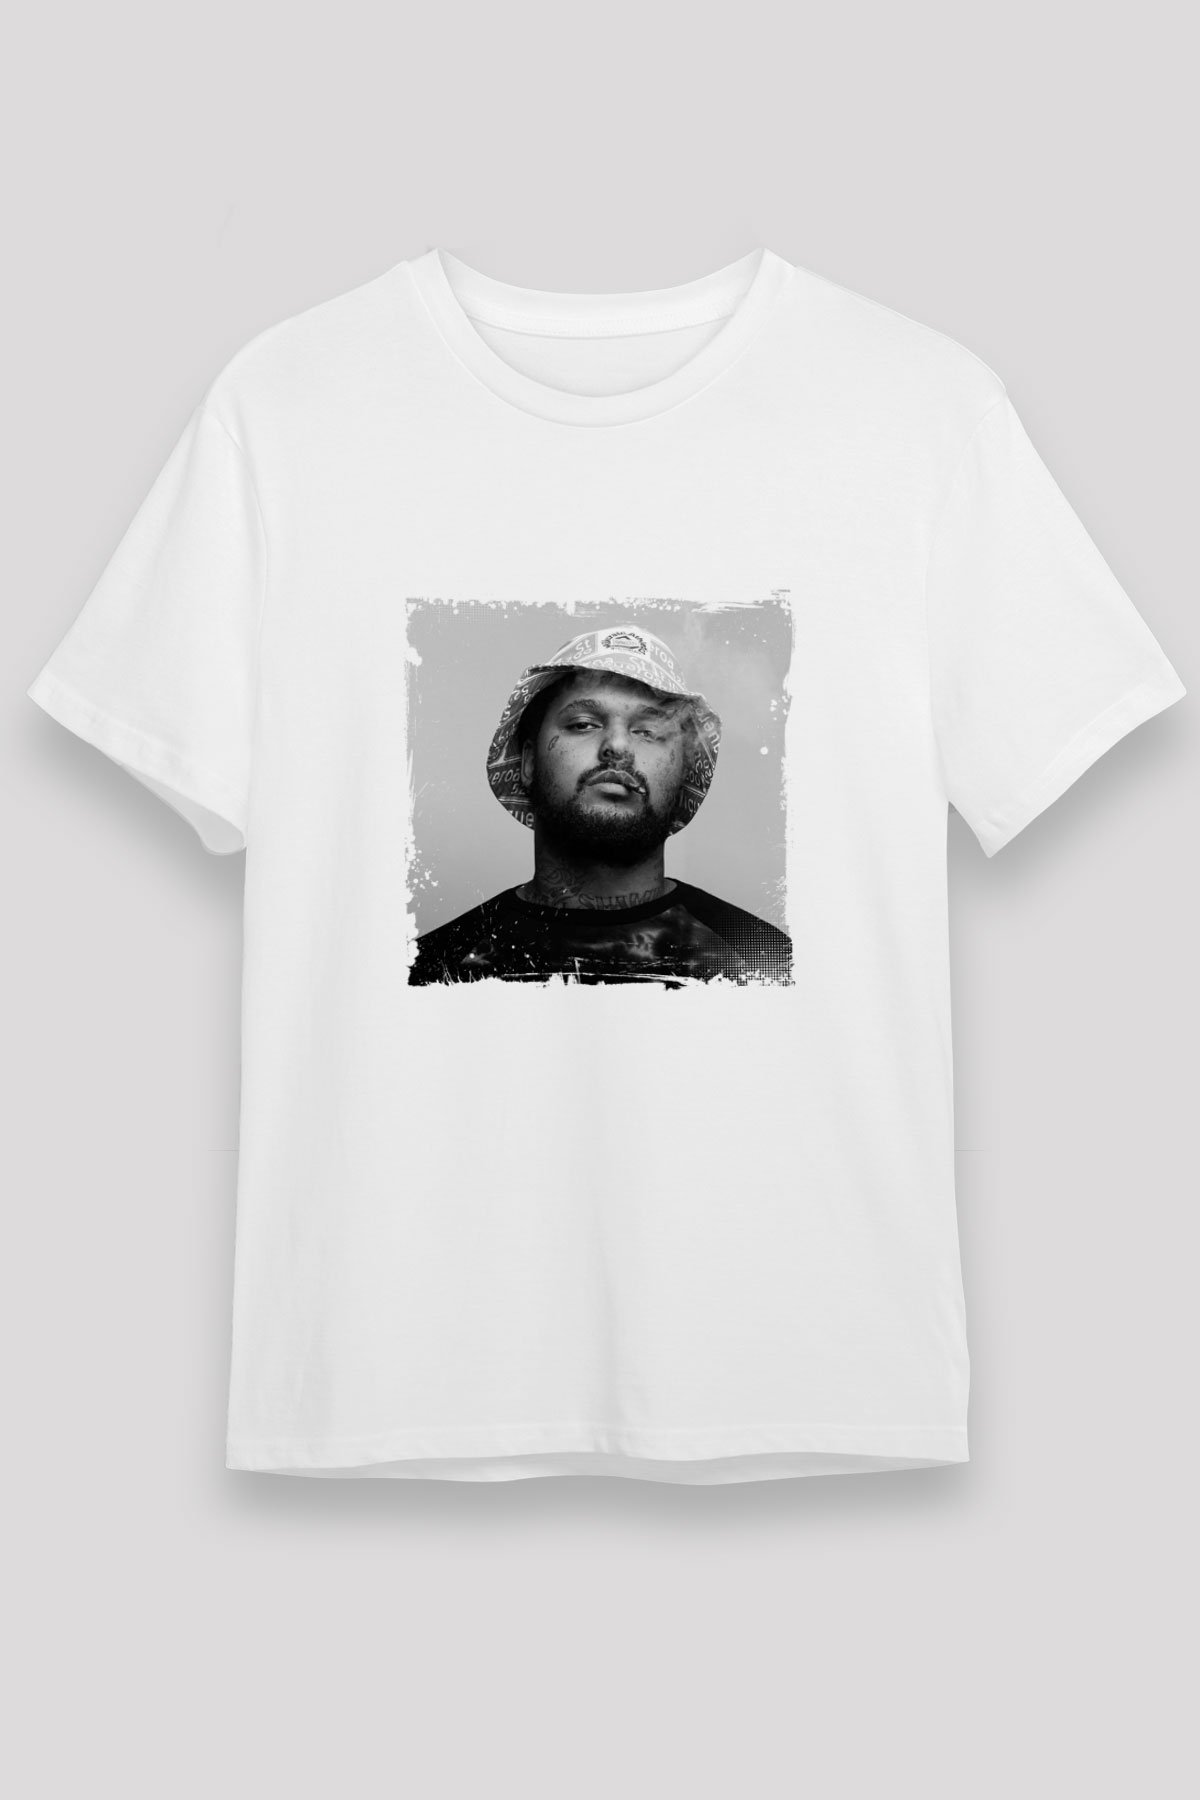 Schoolboy Q T shirt,Hip Hop,Rap Tshirt 06/